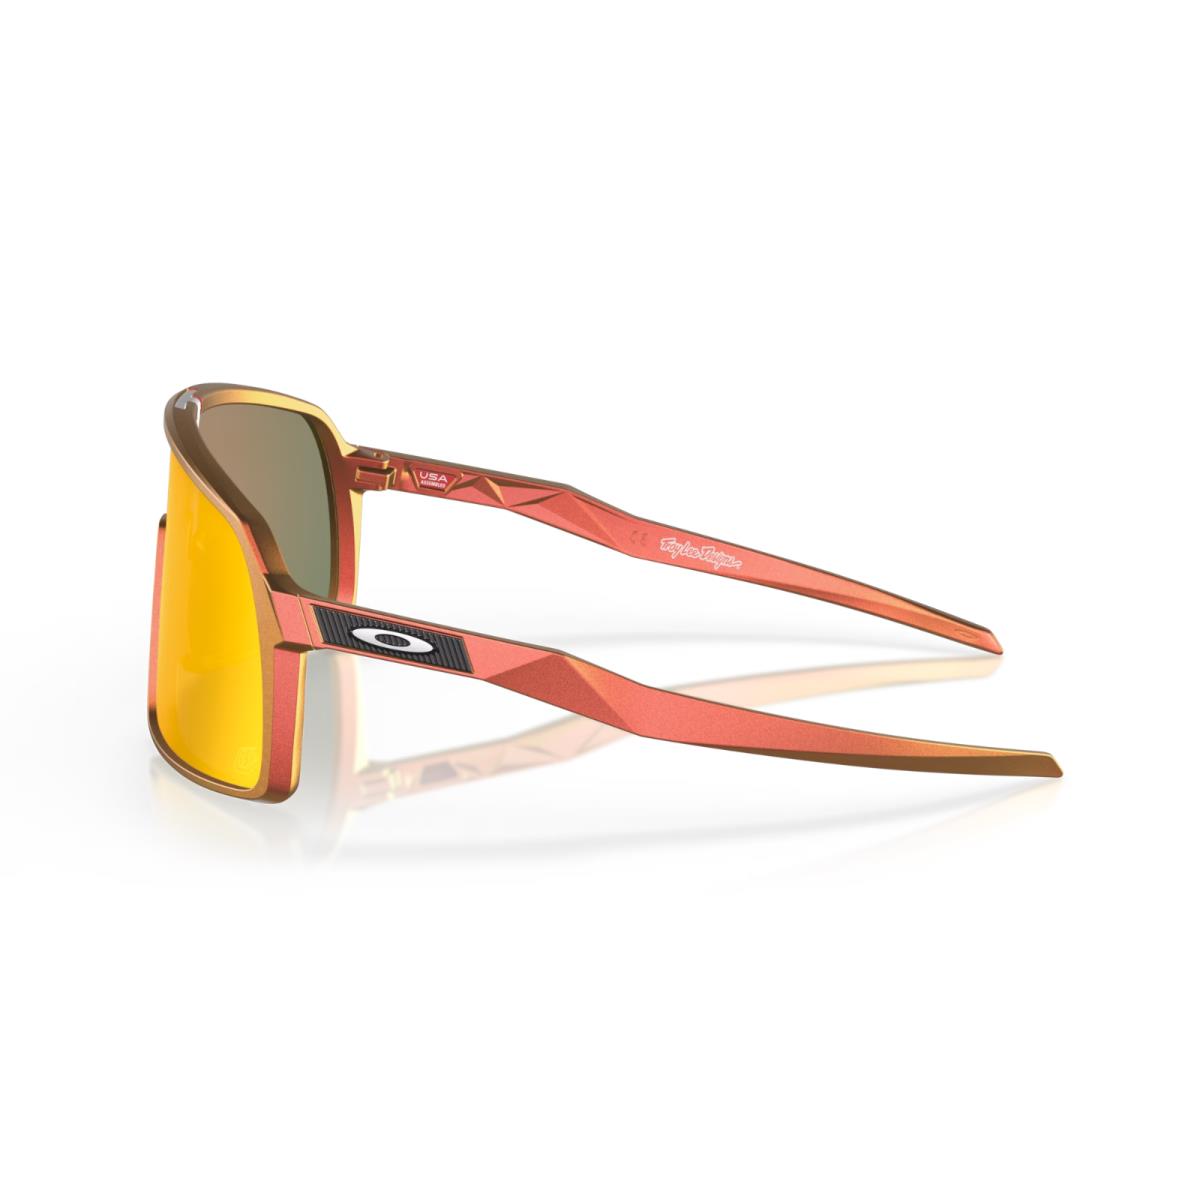 Oakley sunglasses  - Frame: Red Gold Shift, Lens: 1